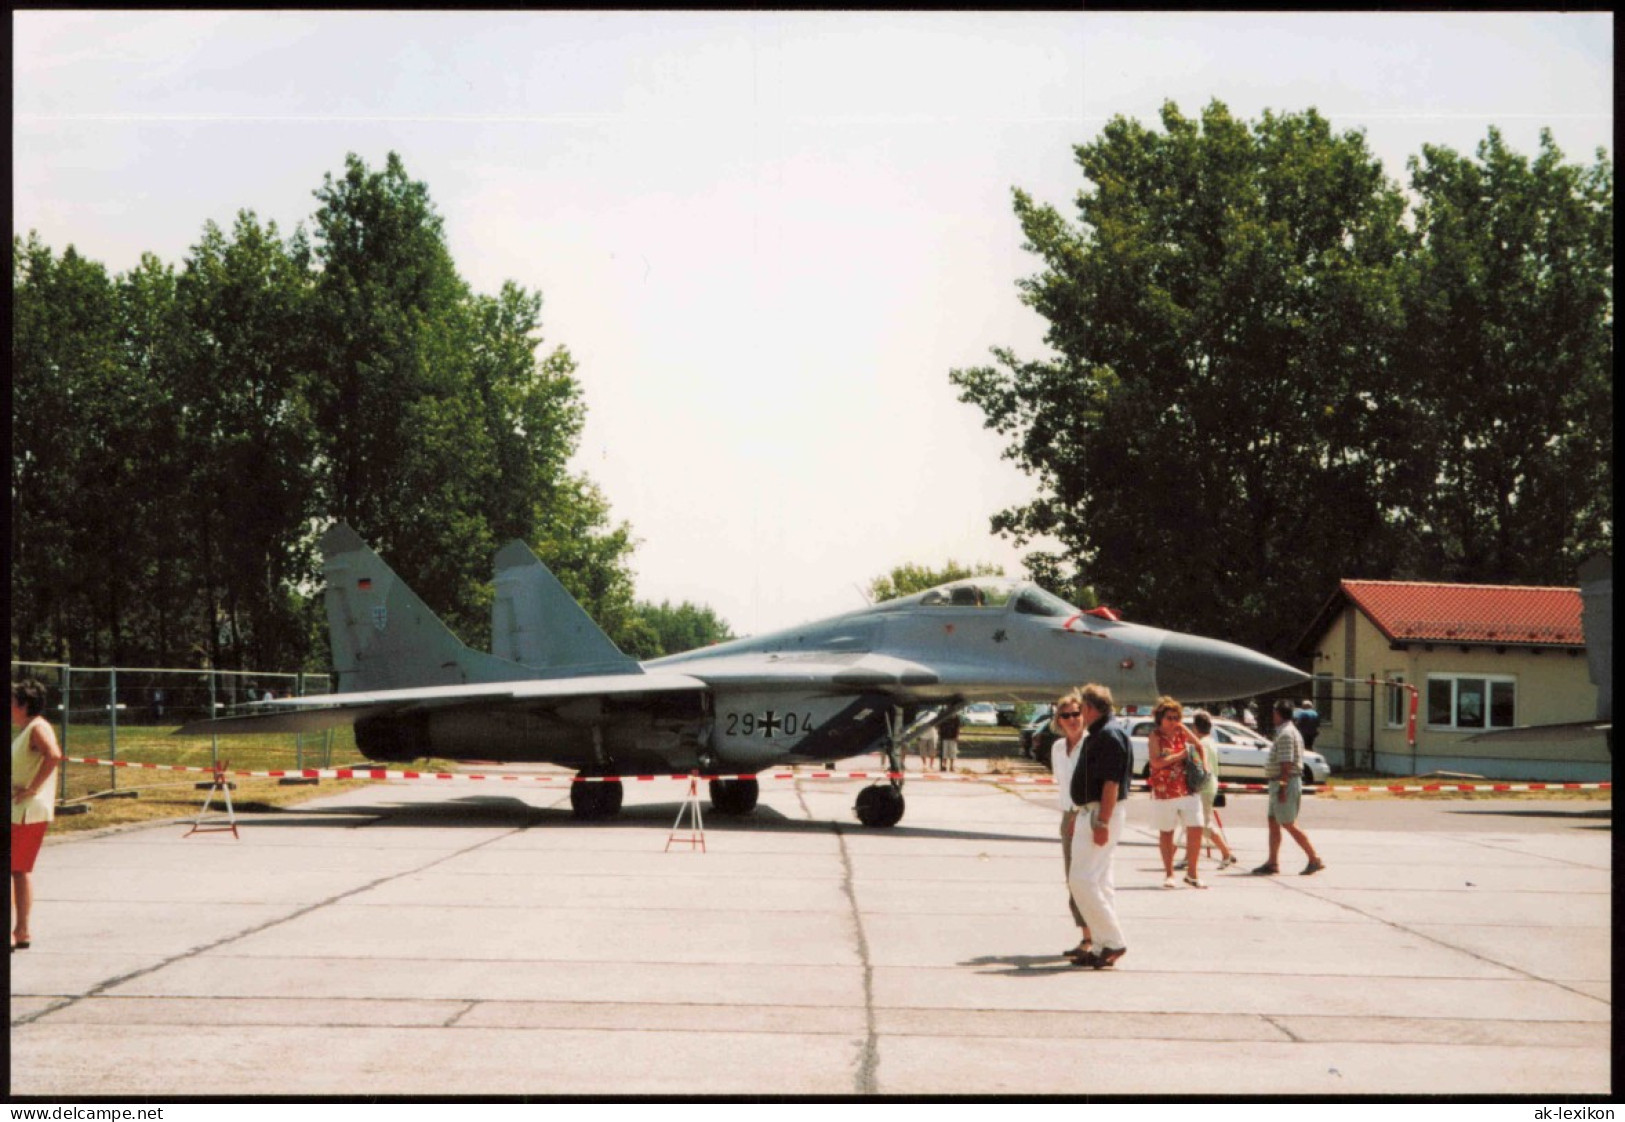 Kampfjet Vom Typ MiG-29 Bundeswehr Flugzeug 1980 Privatfoto - Materiale